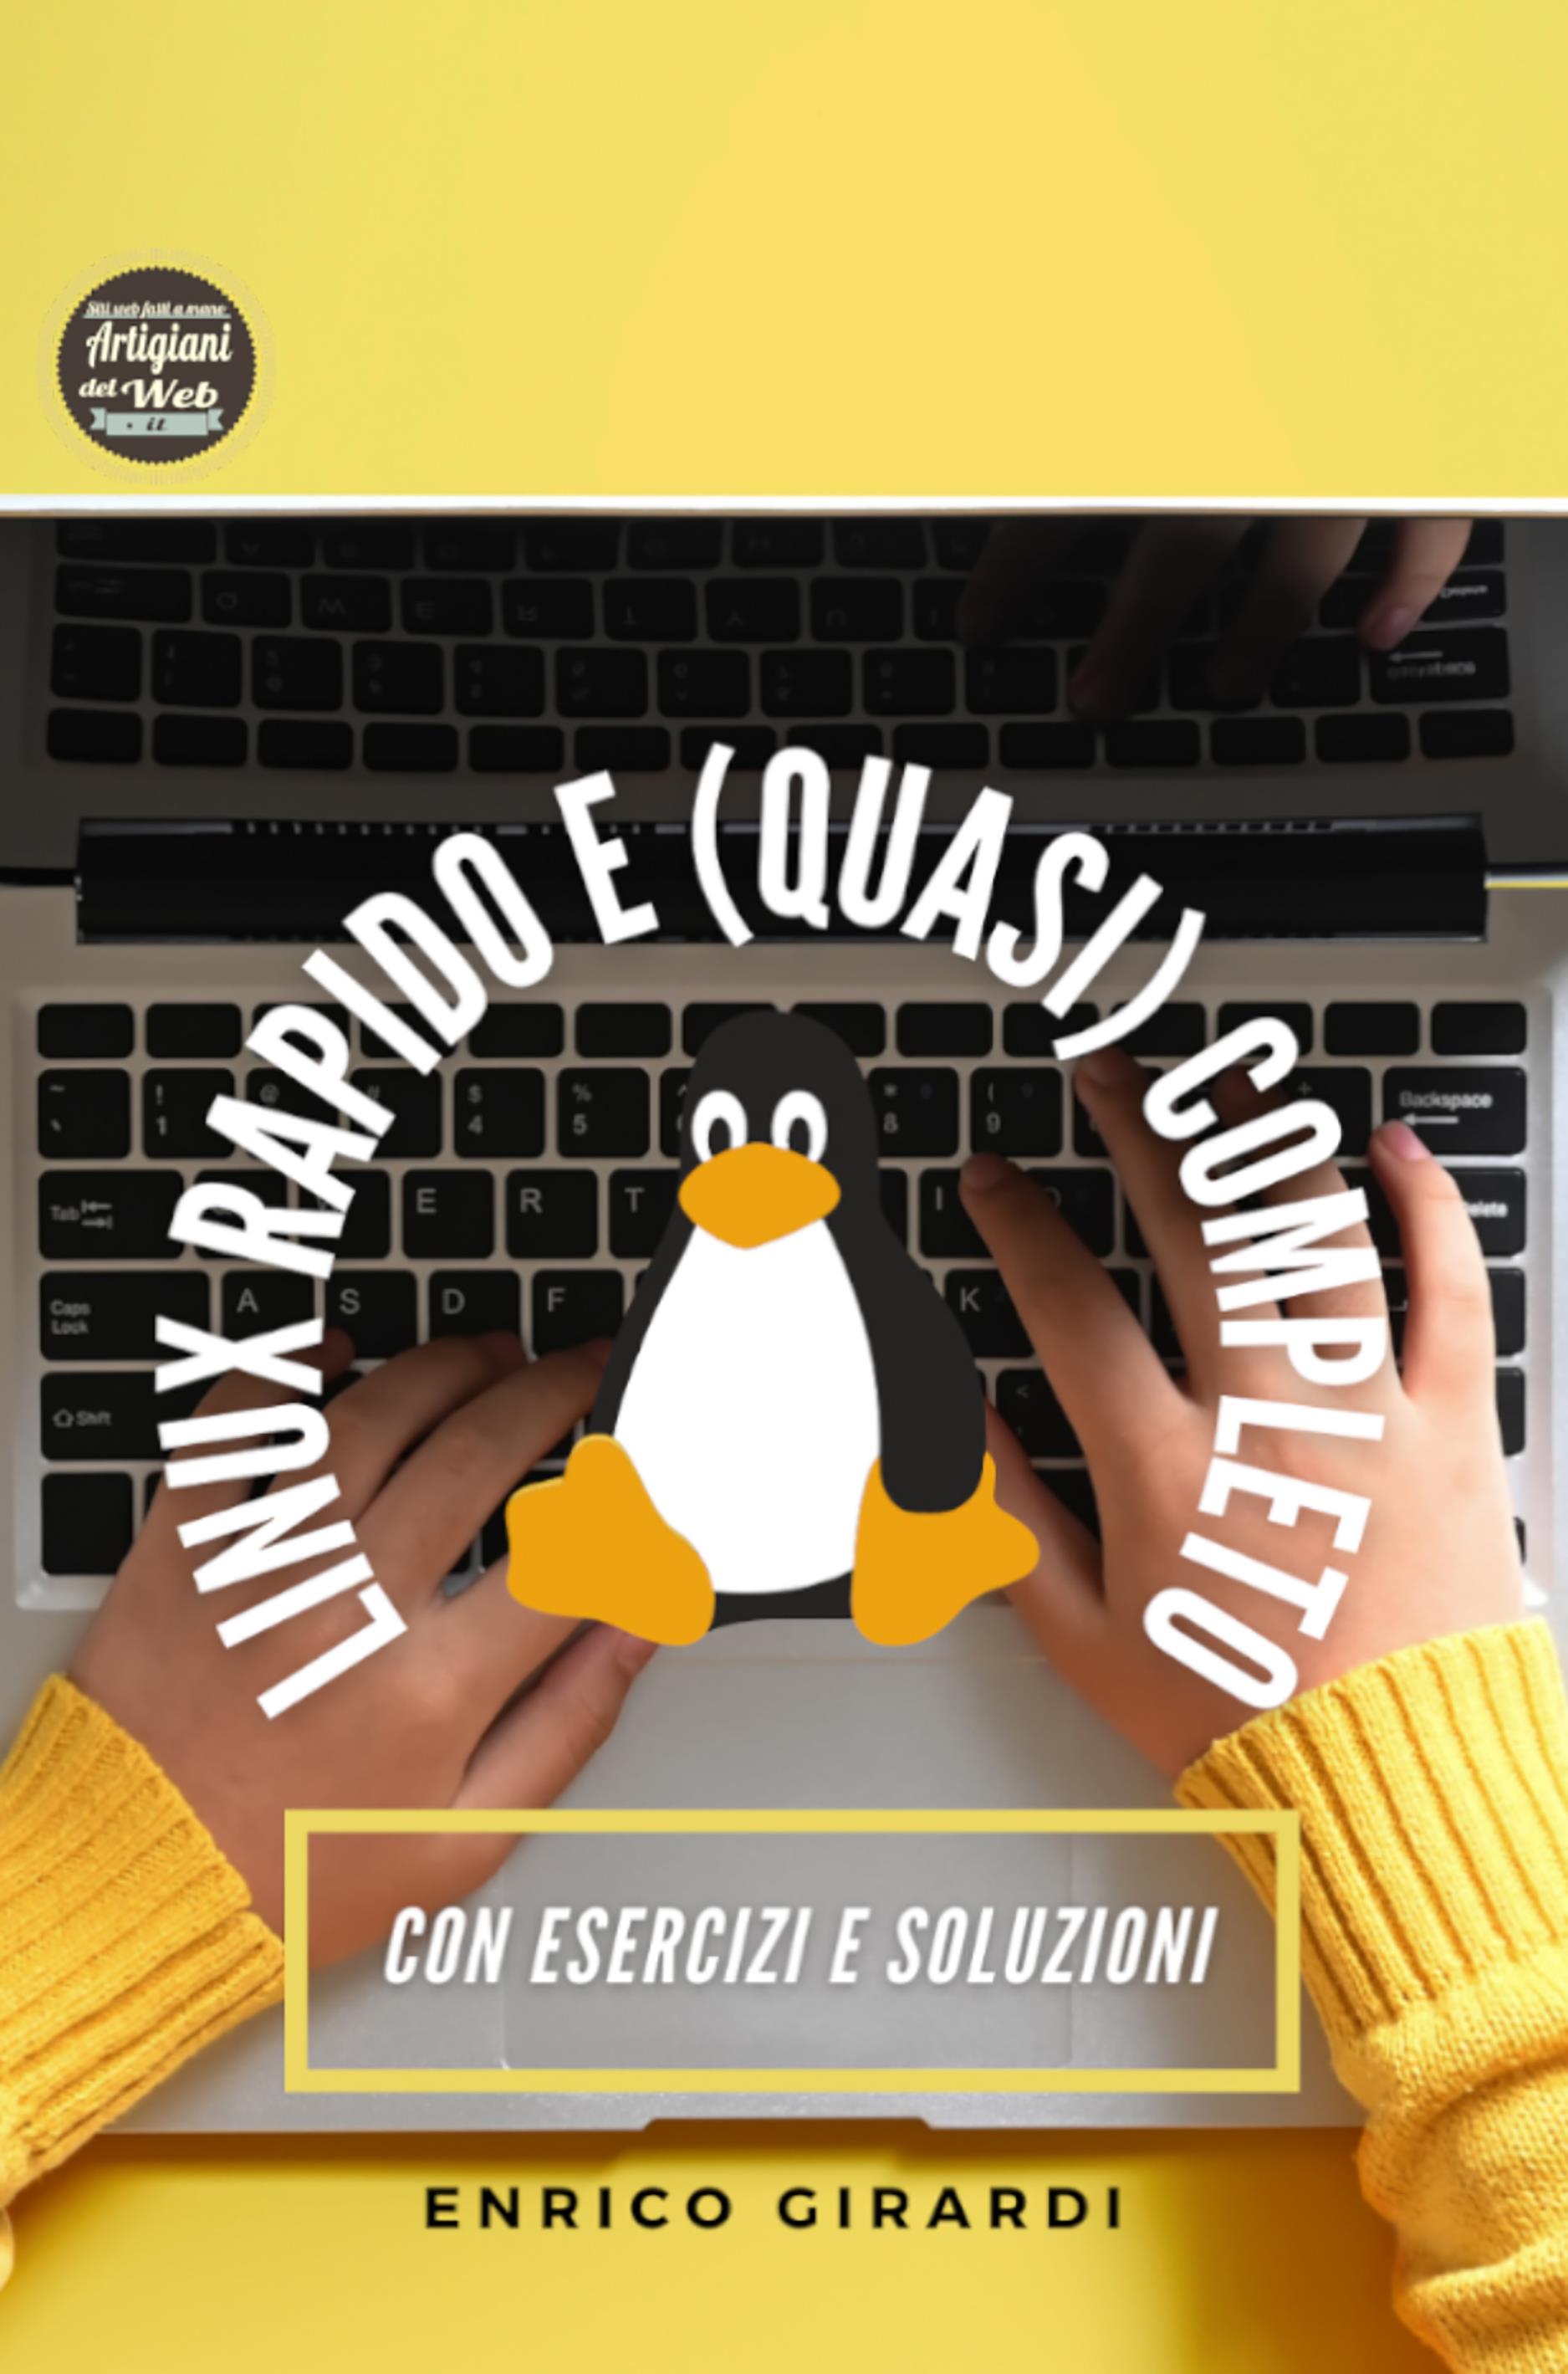 Linux rapido e (quasi) completo